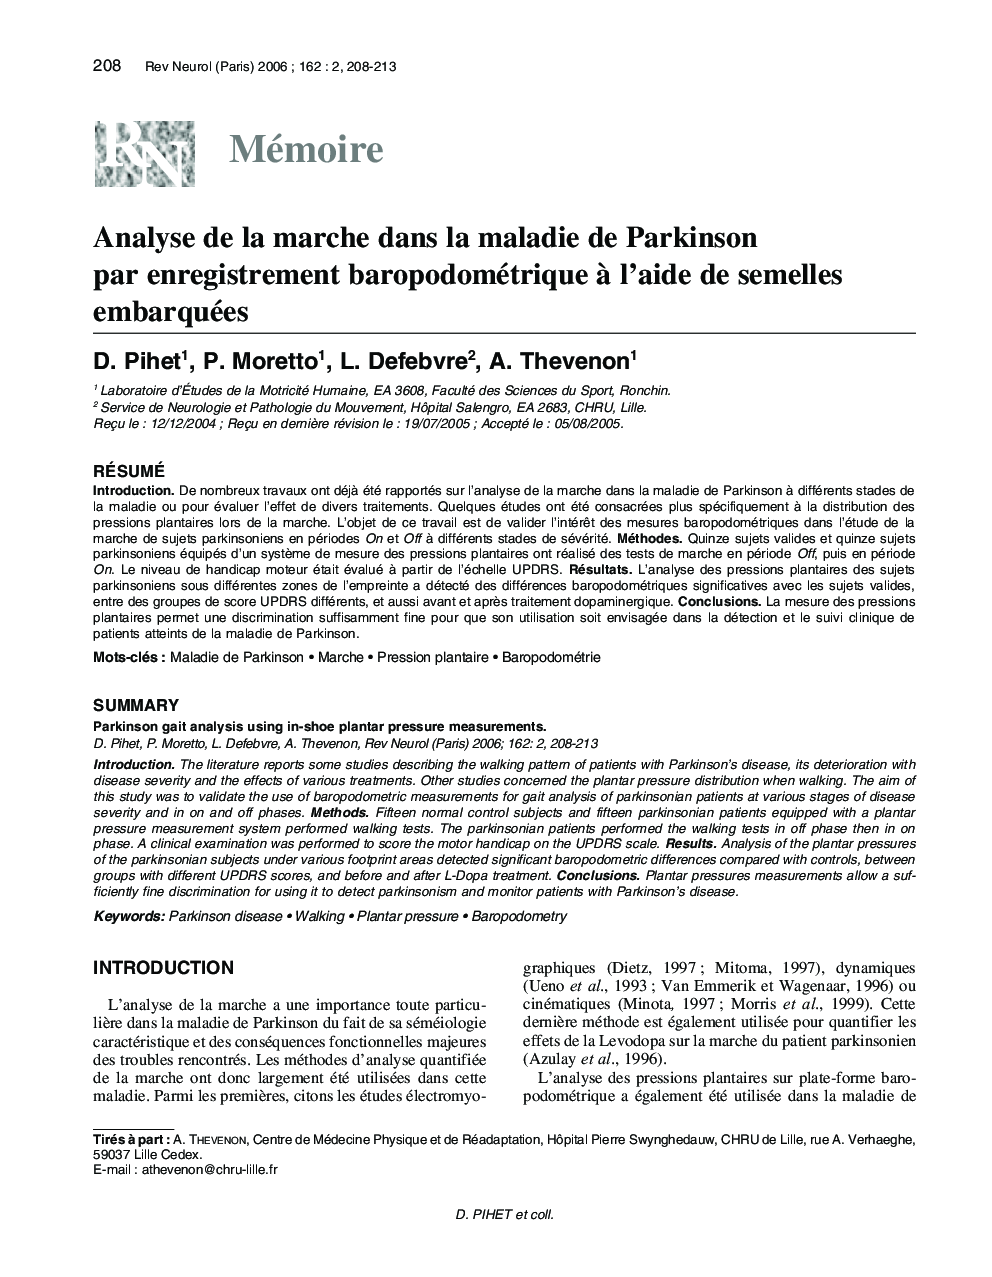 Analyse de la marche dans la maladie de Parkinson par enregistrement baropodométrique Ã  l'aide de semelles embarquées